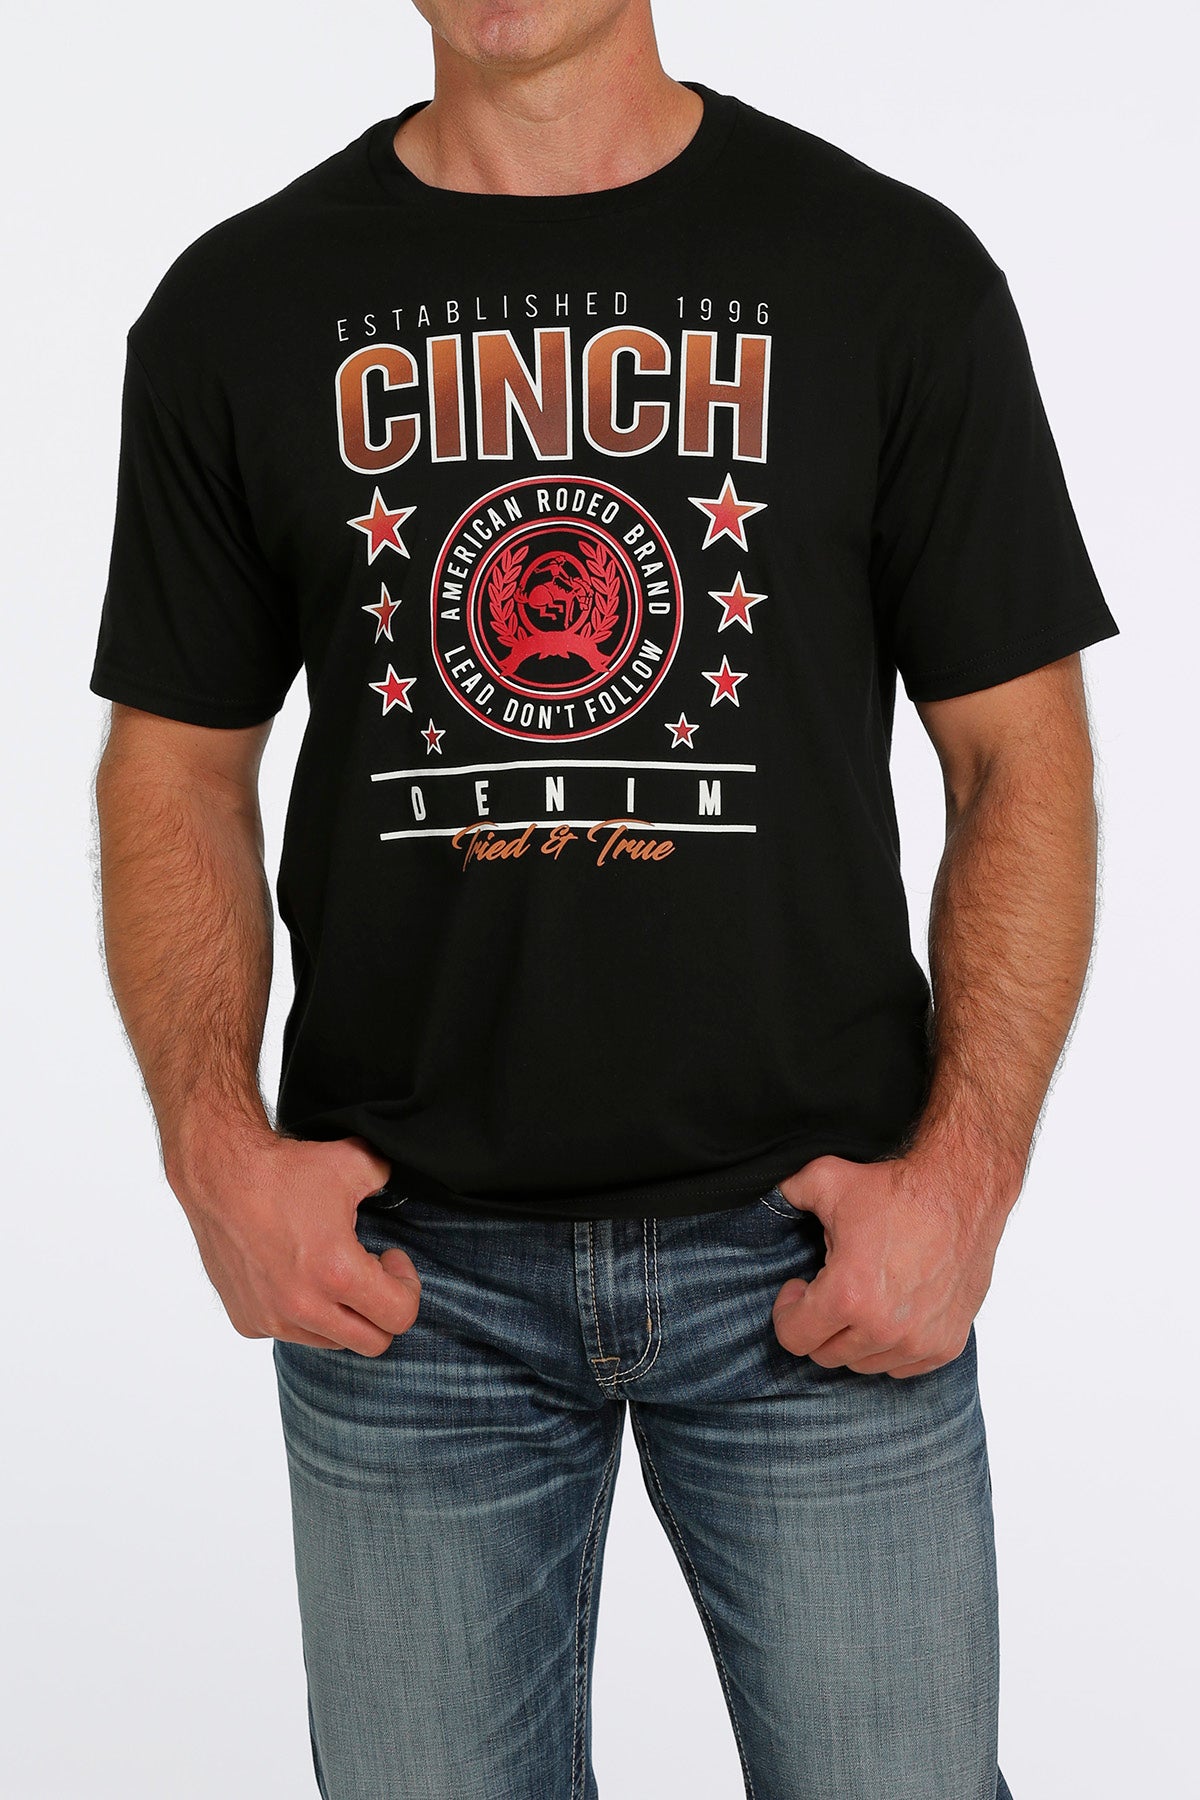 Cinch Men’s logo tee